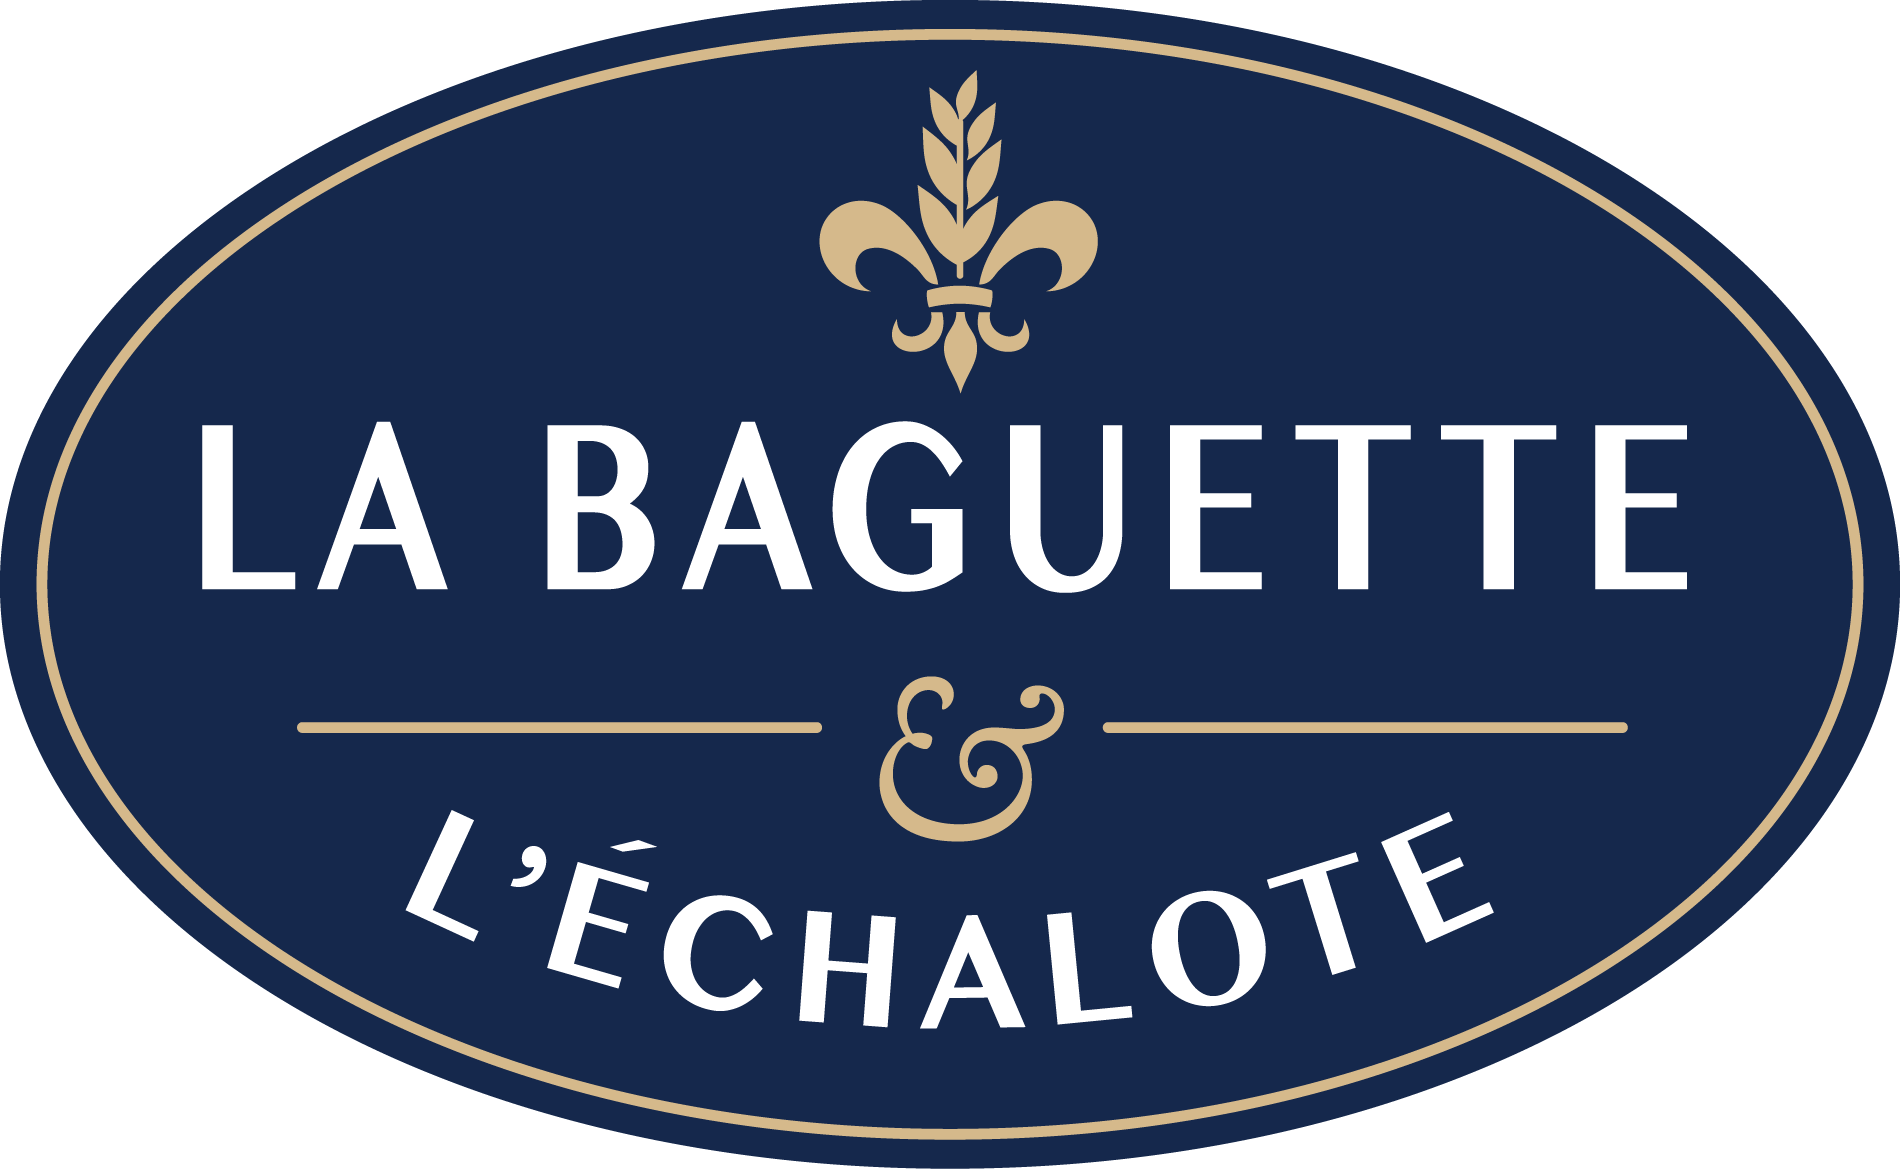 (c) Labaguette.ca